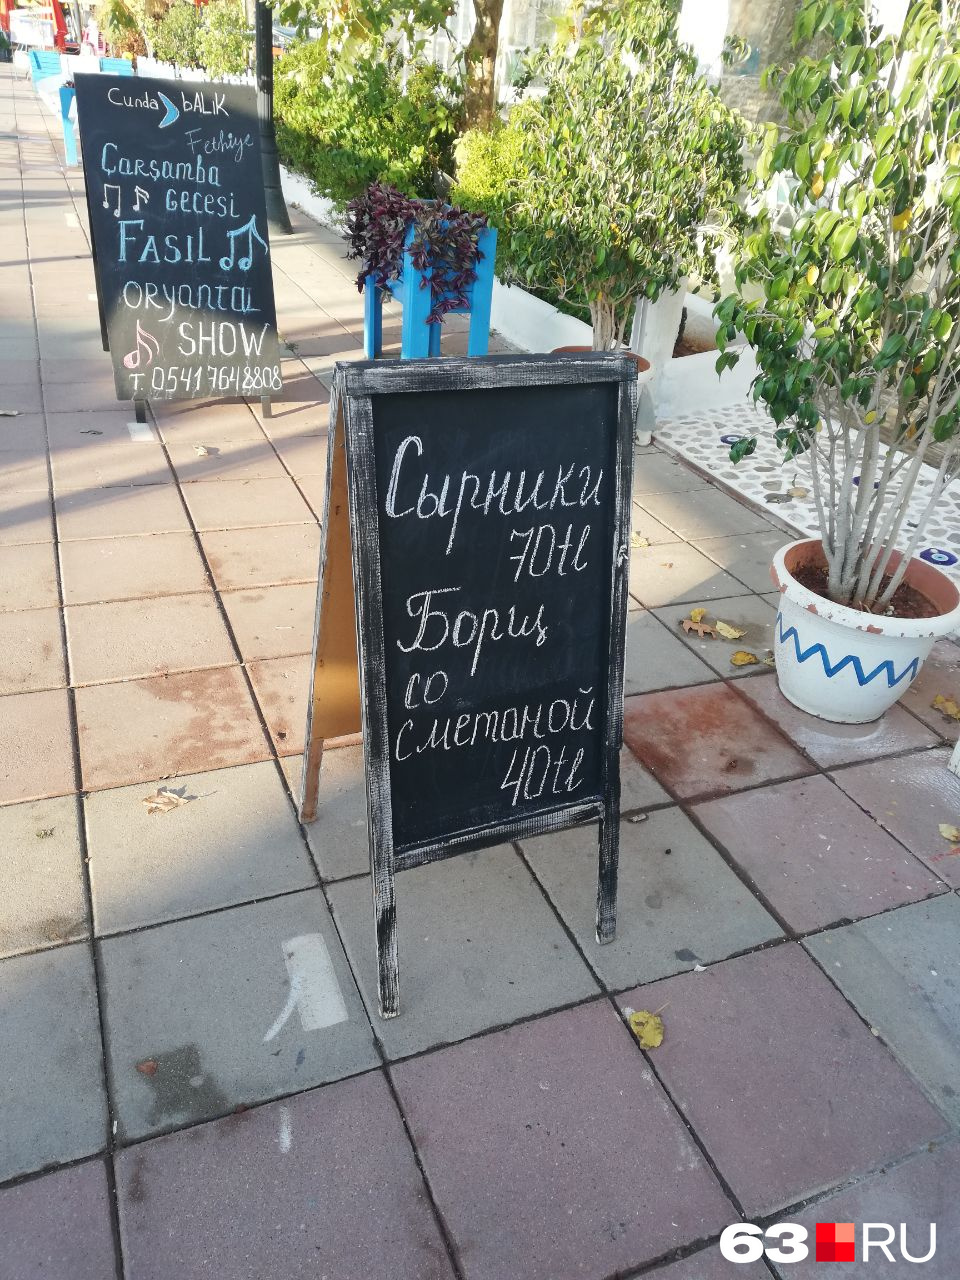 Вывески возле кафе написаны на двух языках